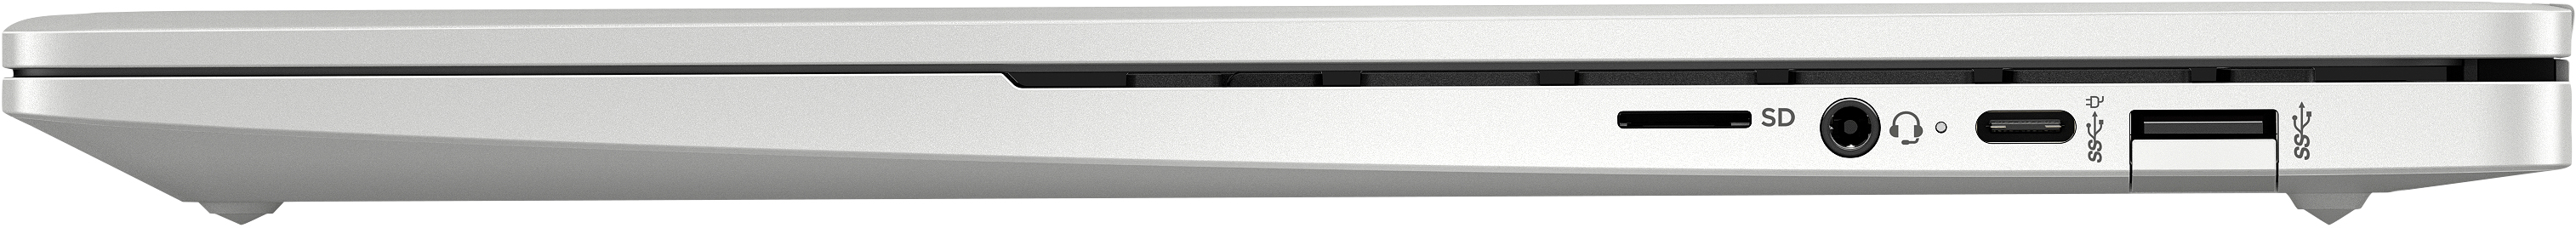 Notebook HP Chromebook Pro c640 Enterprise i3-10110U 35,6 cm (14